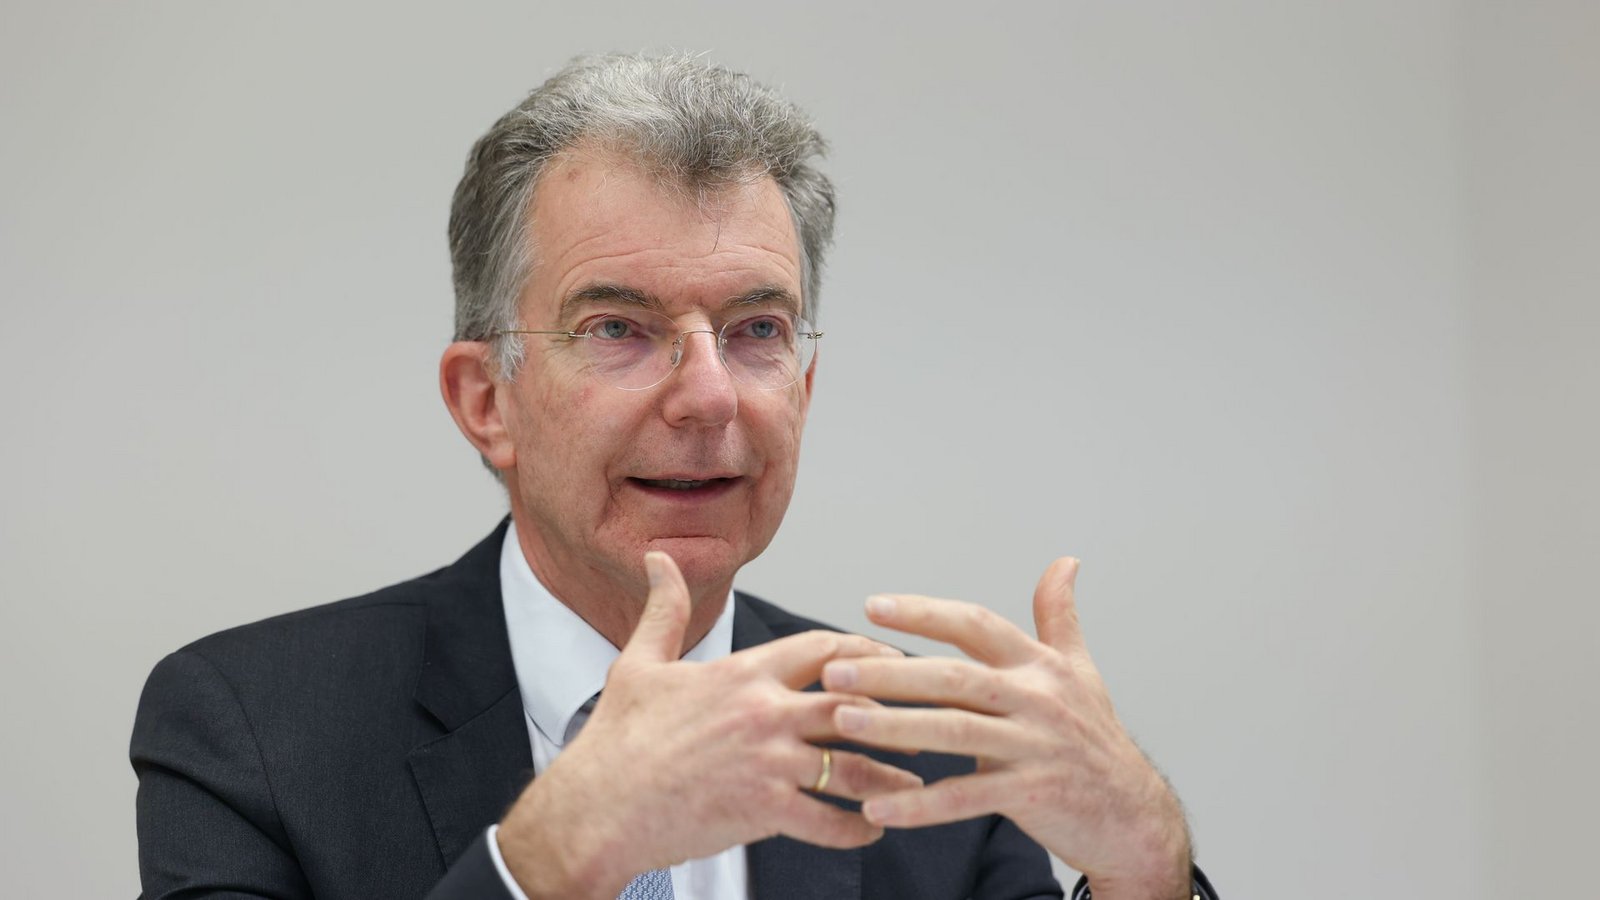 Christoph Heusgen ist Vorsitzender der Münchner Sicherheitskonferenz.Foto: Jörg Carstensen/dpa